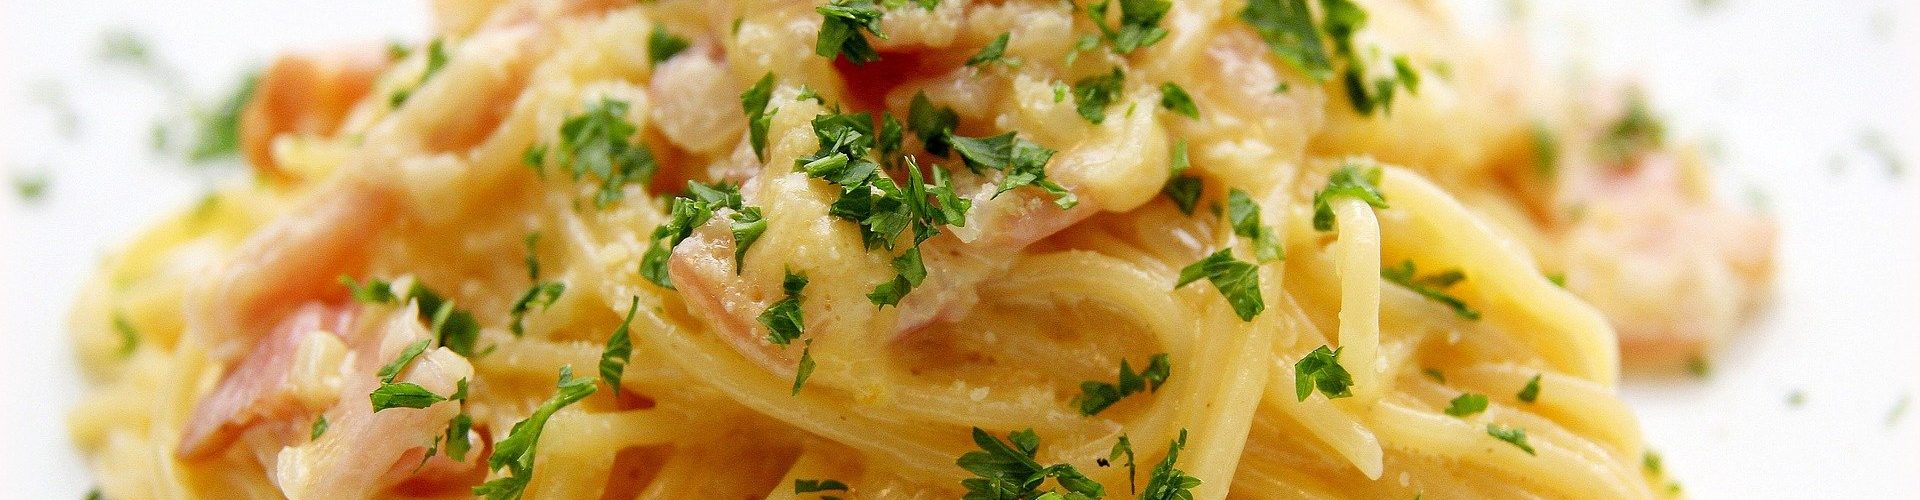 Einfaches Rezept für Hausgemachte Spaghetti Carbonara